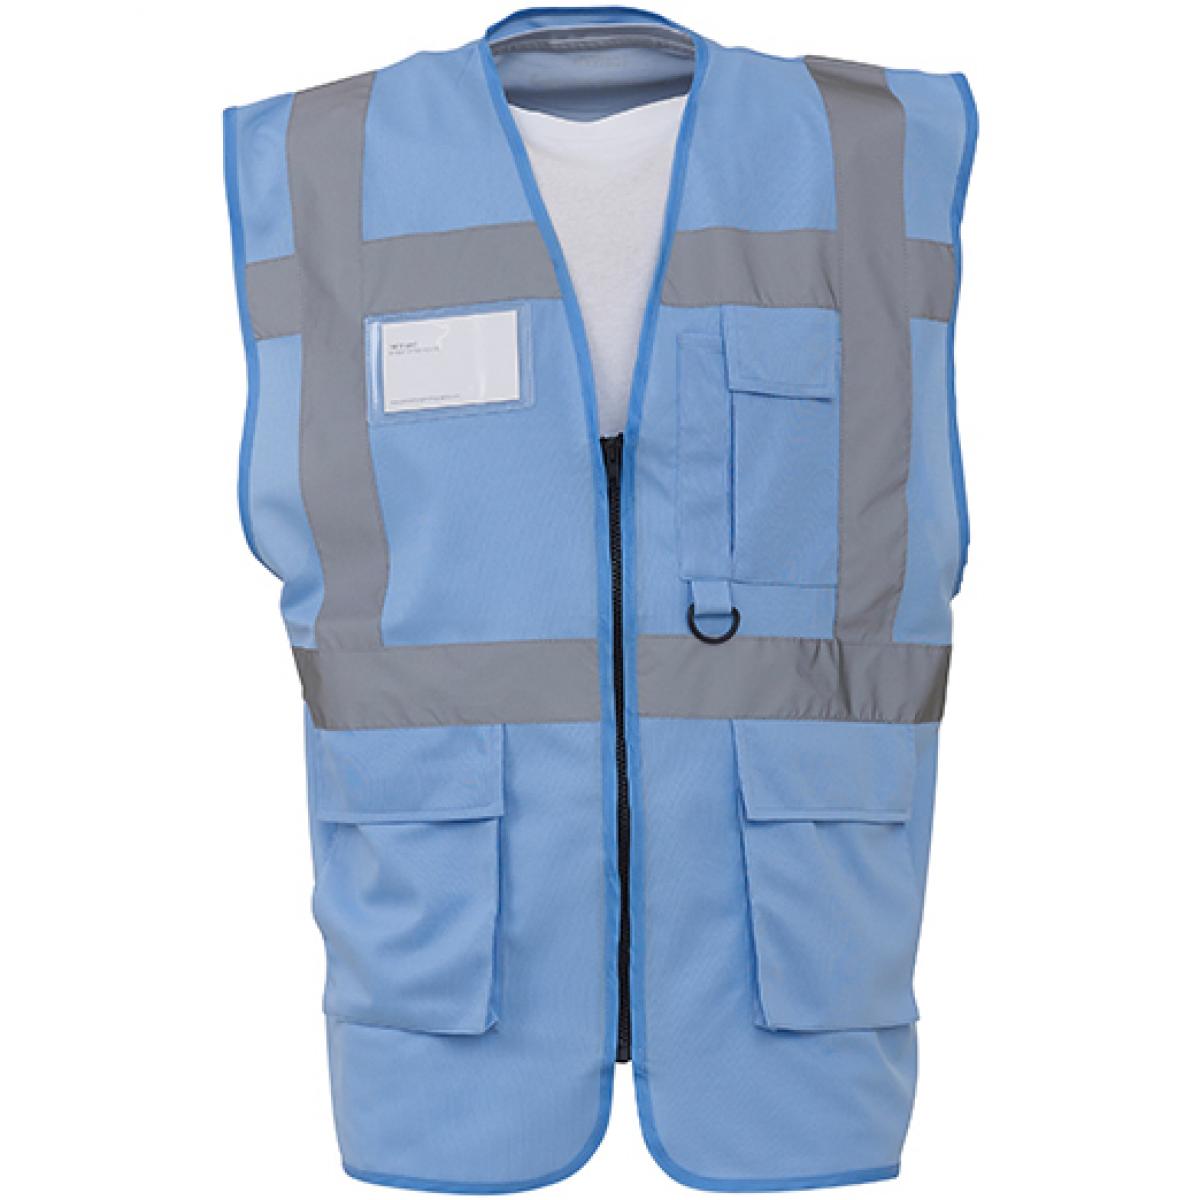 Hersteller: YOKO Herstellernummer: HVW801 Artikelbezeichnung: Herren Multi-Functional Executive Waistcoat Farbe: Sky Blue